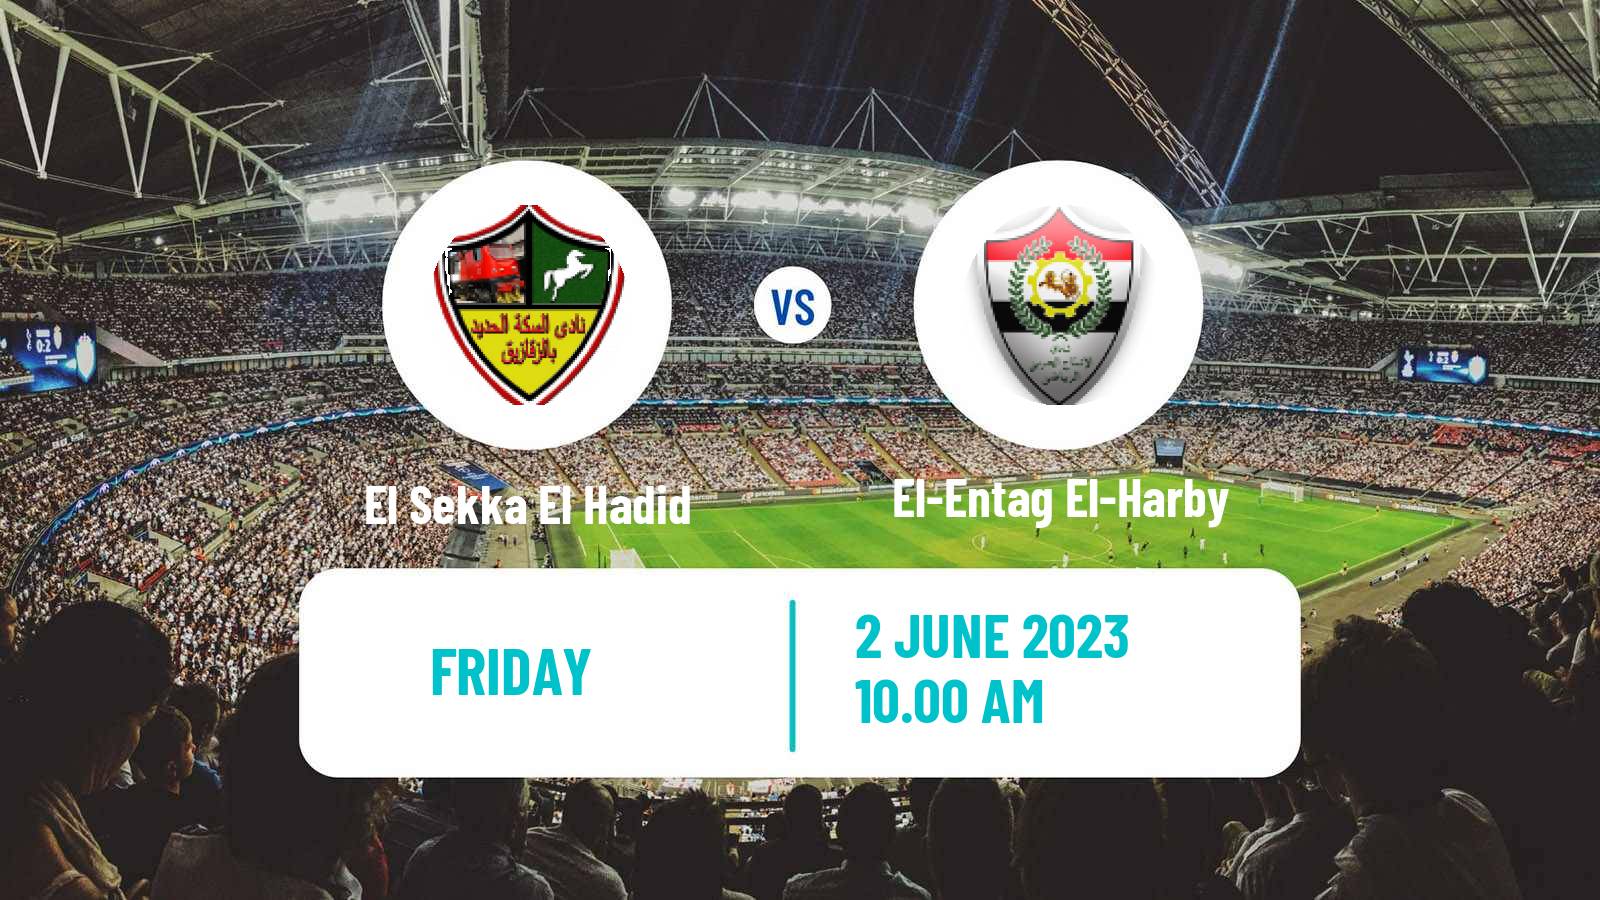 Soccer Egyptian Division 2 - Group B El Sekka El Hadid - El-Entag El-Harby